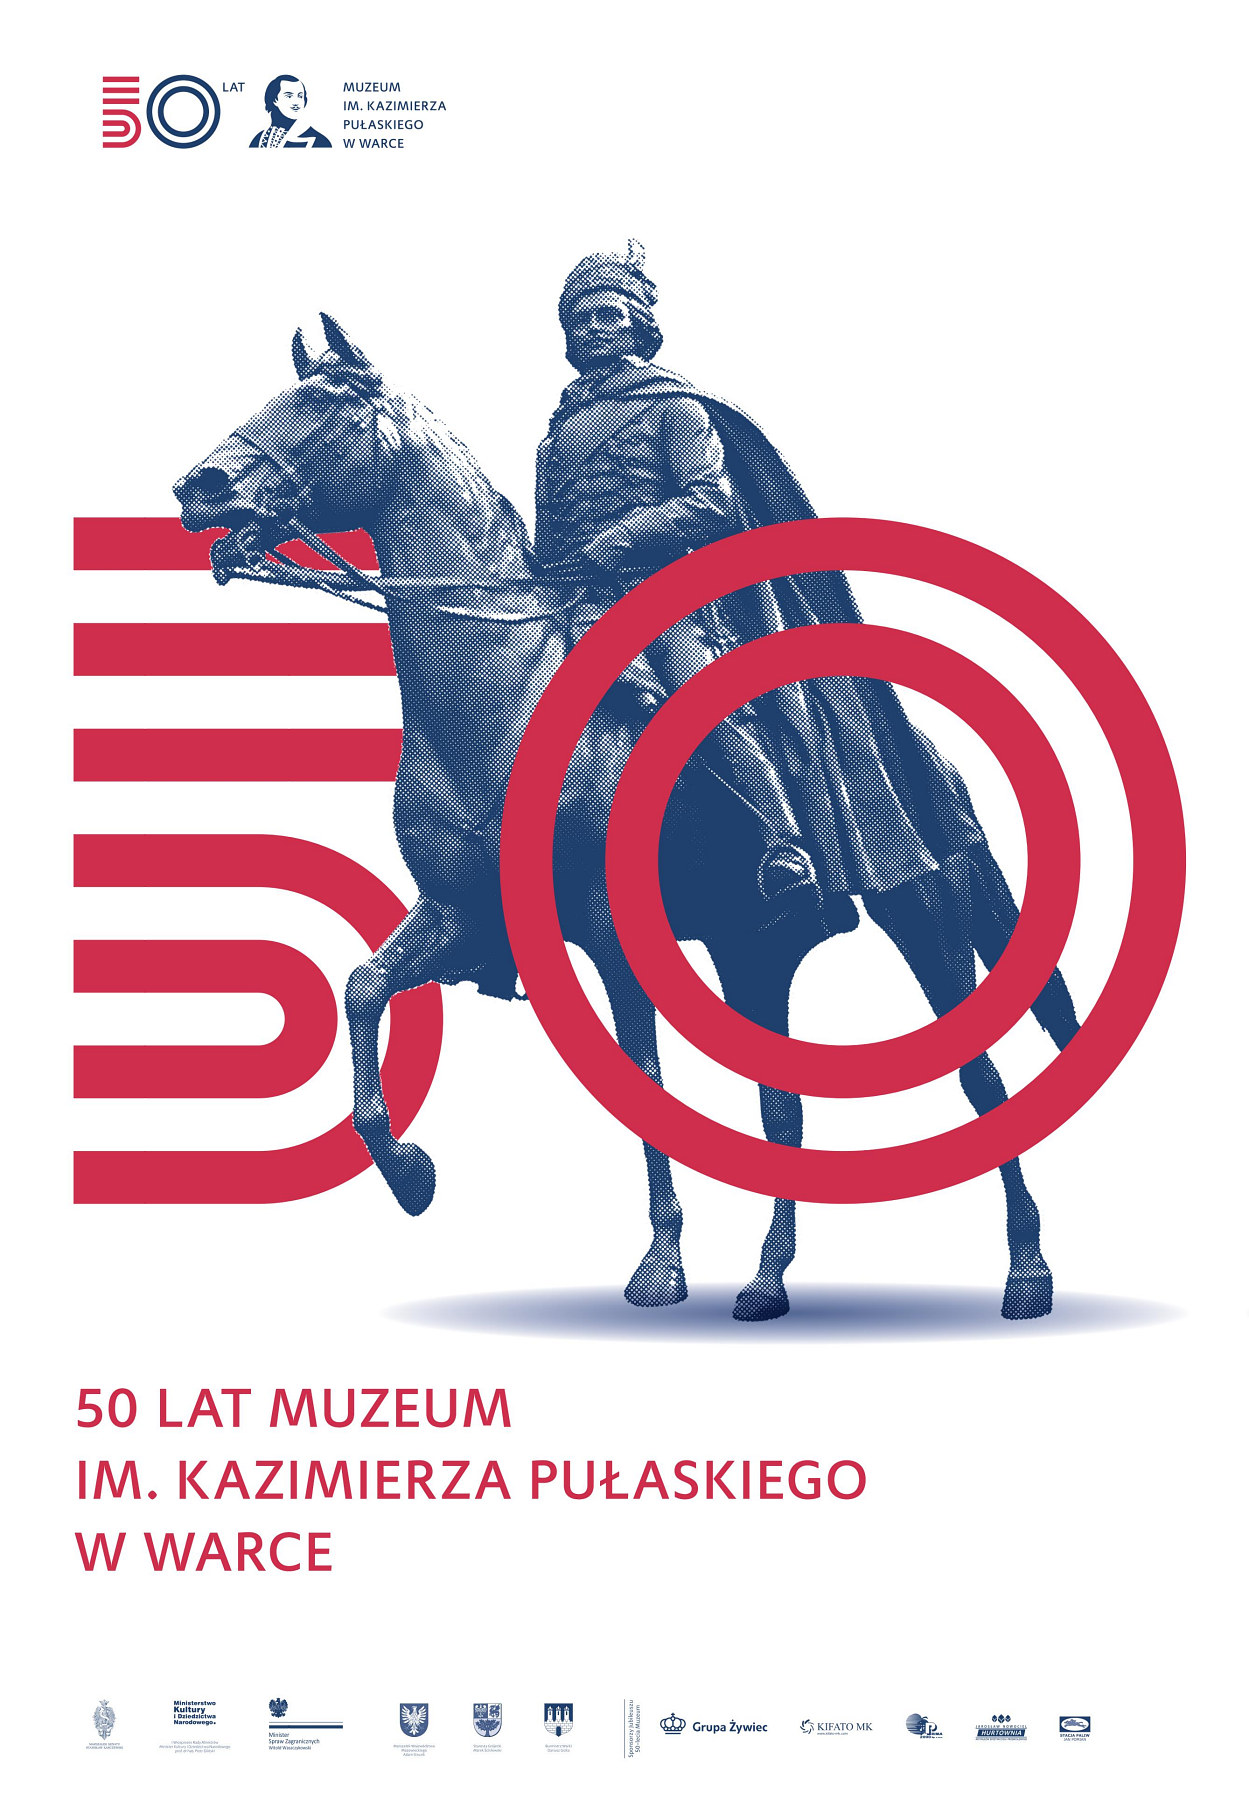 50 lat muzeum plakat